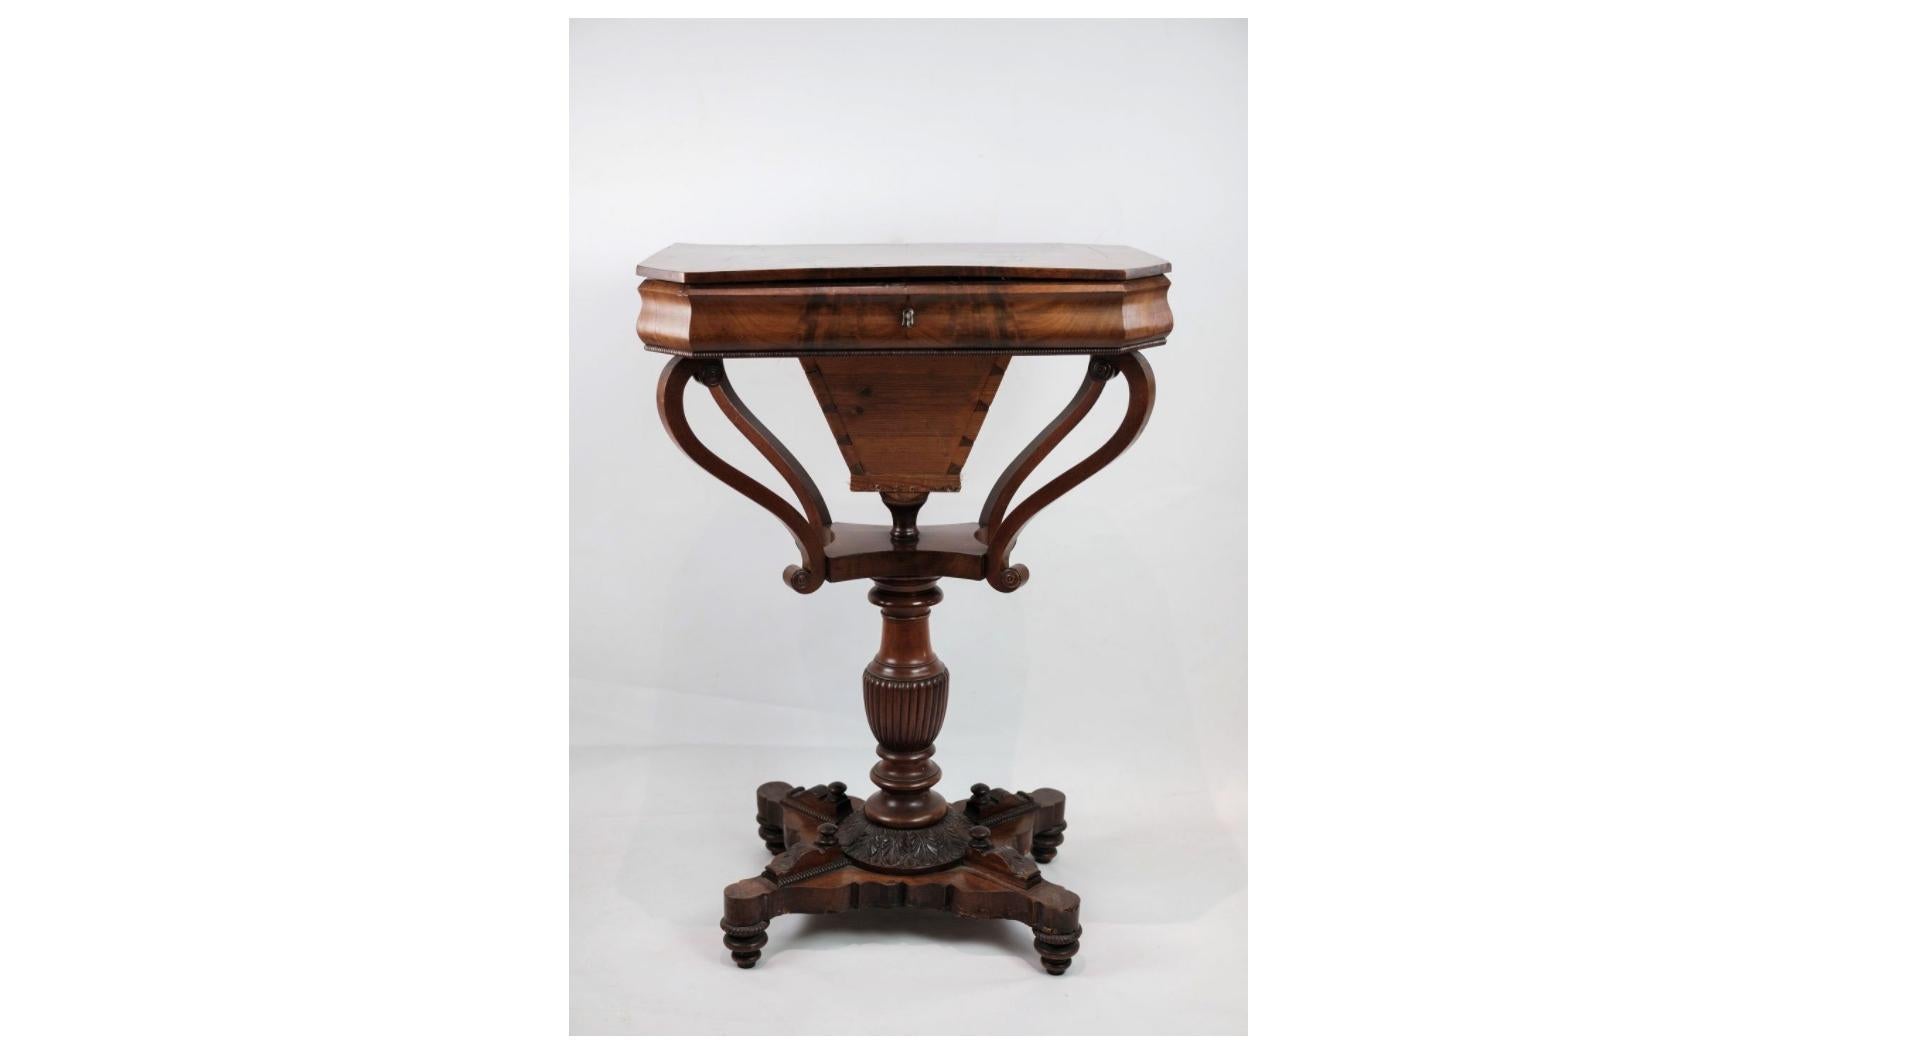 La table de couture antique en acajou sur pilier datant des environs des années 1840 est un meuble captivant qui respire le charme et l'histoire. Fabriquée en riche bois d'acajou, connu pour sa durabilité et son aspect luxueux, cette table de